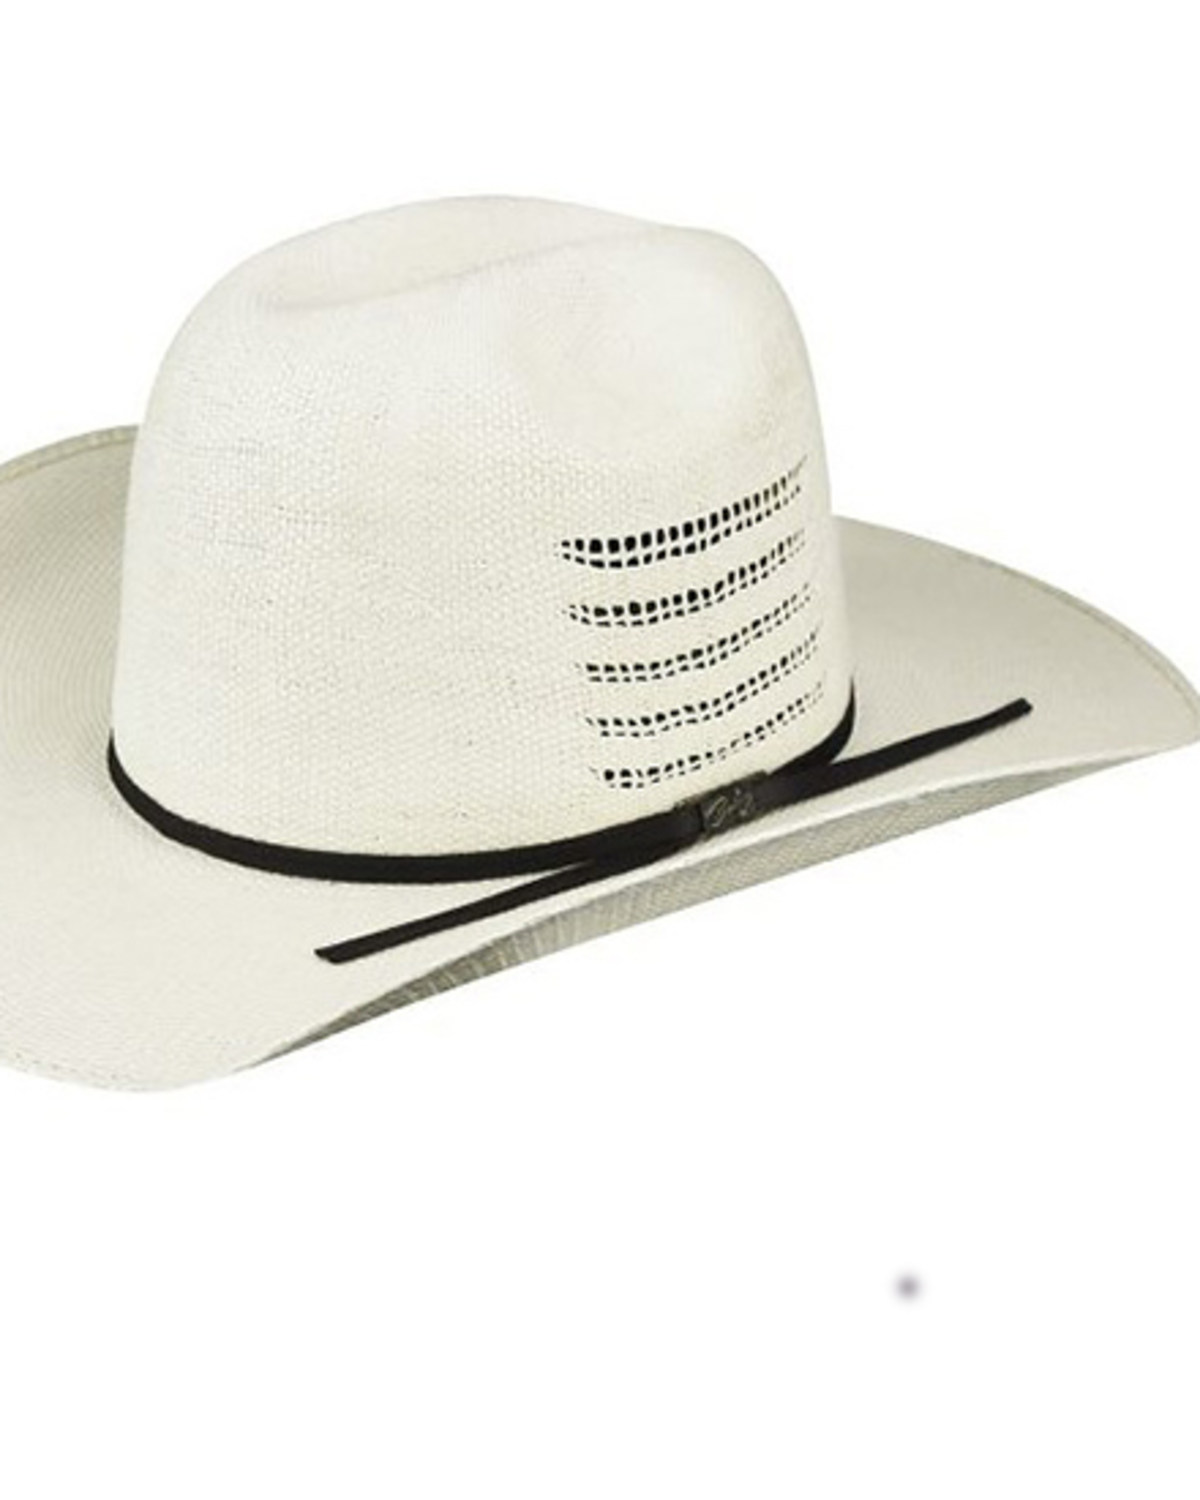 Bailey Deen Straw Cowboy Hat